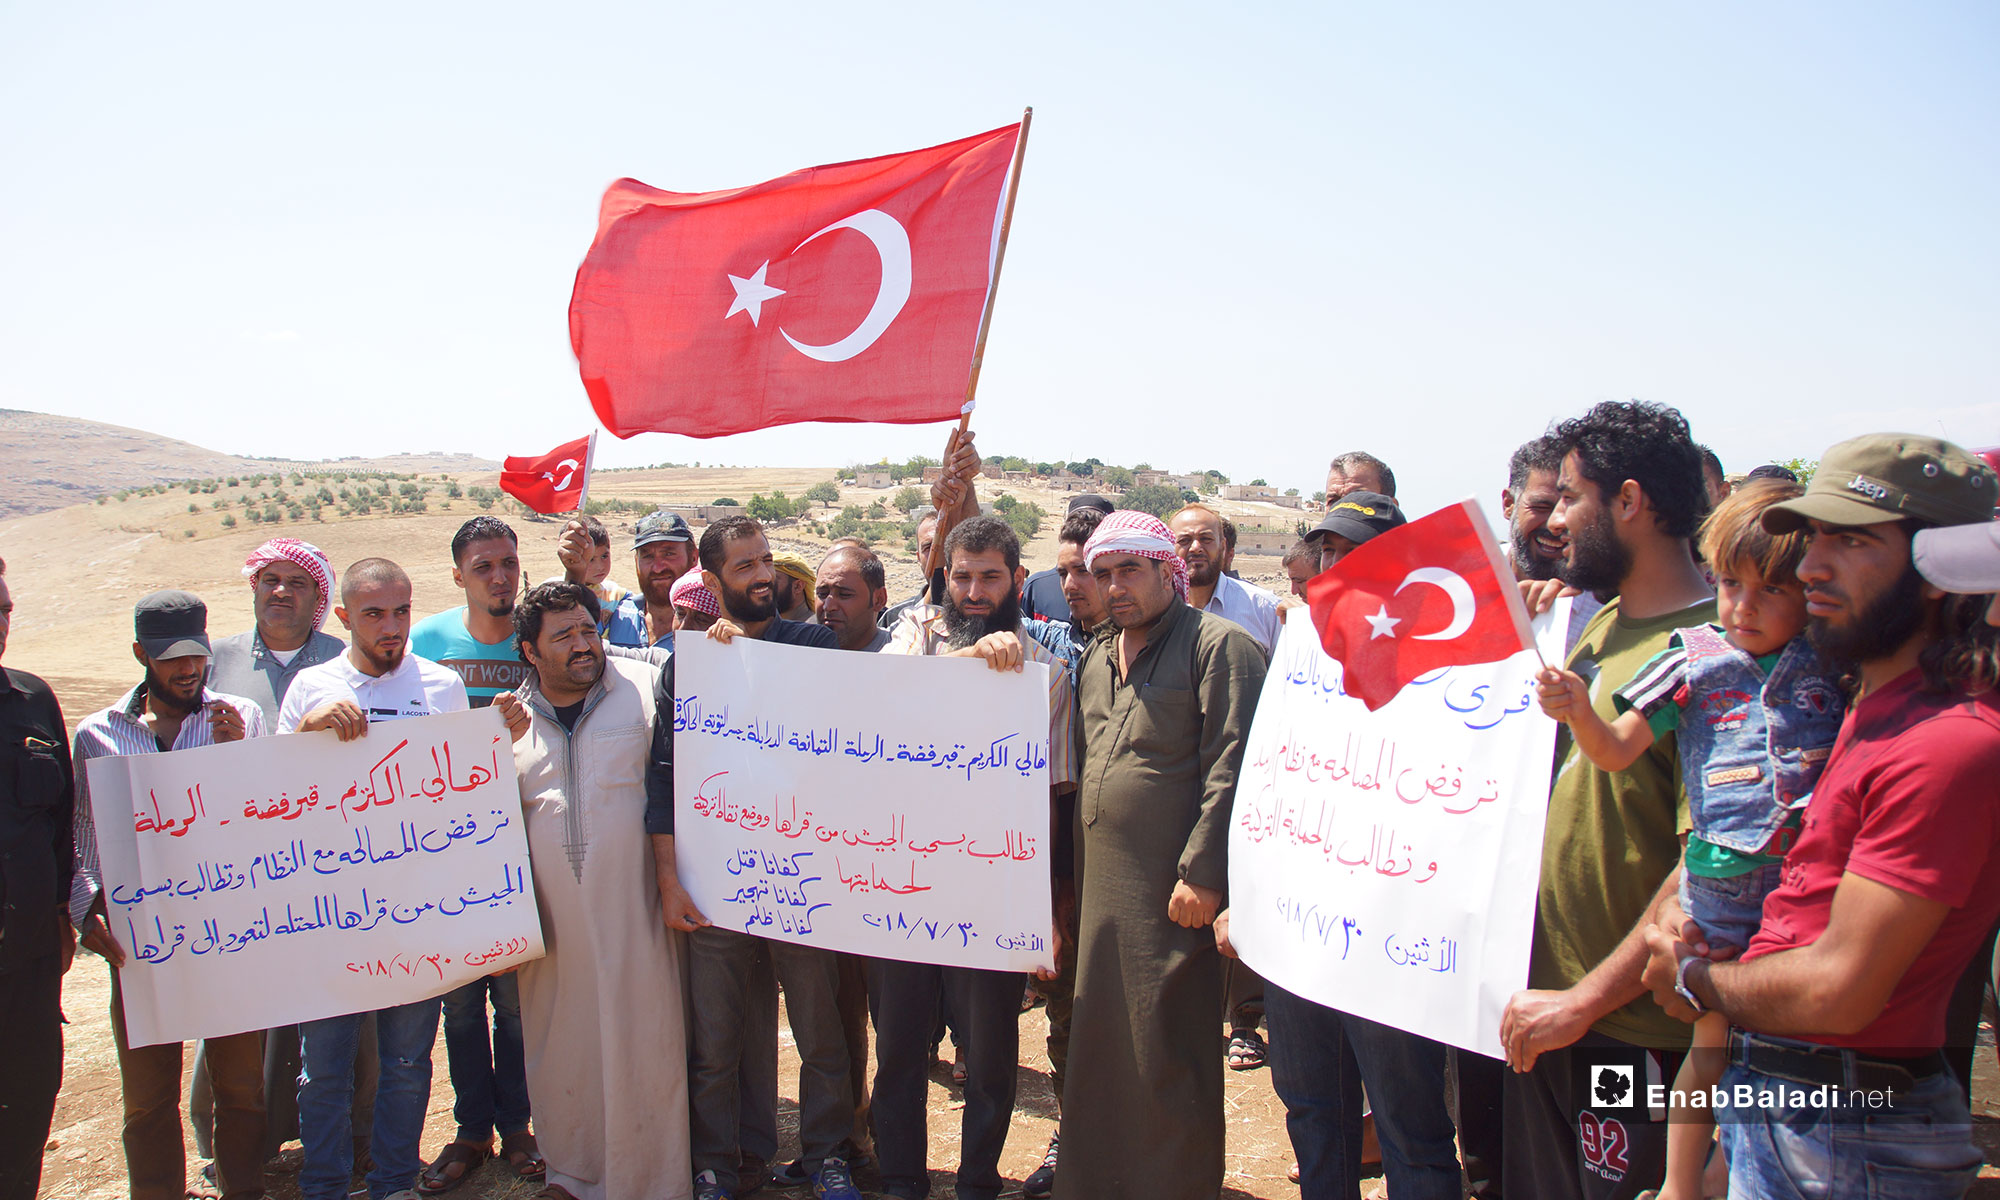 اهالي سهل الغاب يطالبون بالحماية التركية في ريف حماة - 30 تموز 2018 (عنب بلدي)